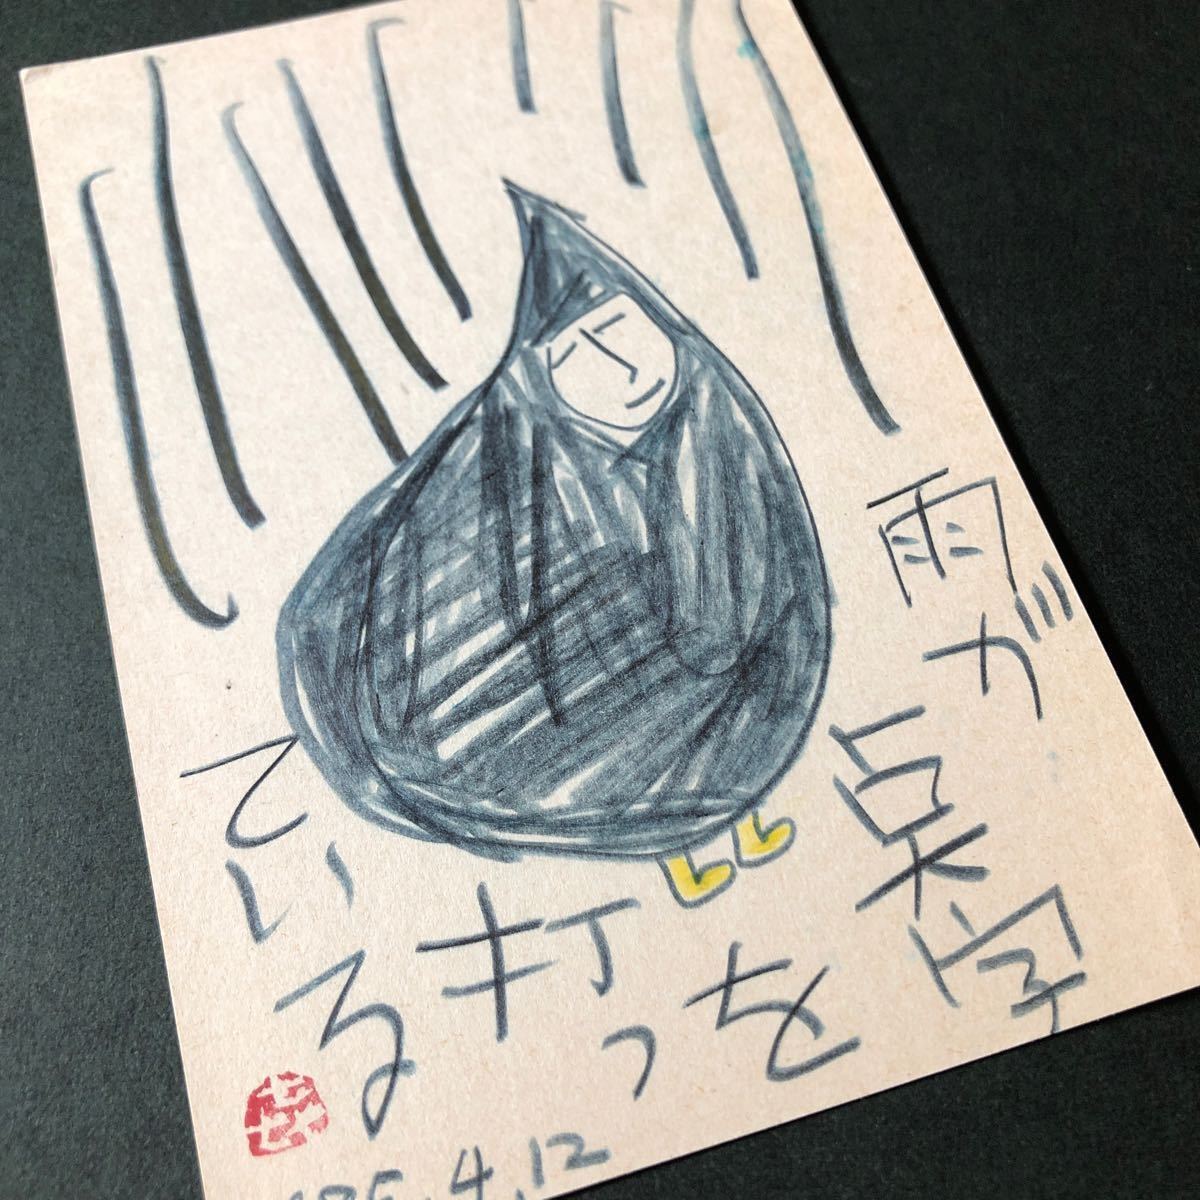 ◆1985, Kiyoharu Yamada, lettre manuscrite illustrée, adressé au Bunka Publishing Bureau, Ginka trimestriel, poésie et peinture, authentique ◆ Carte postale, Kyoto, Peinture, aquarelle, autres